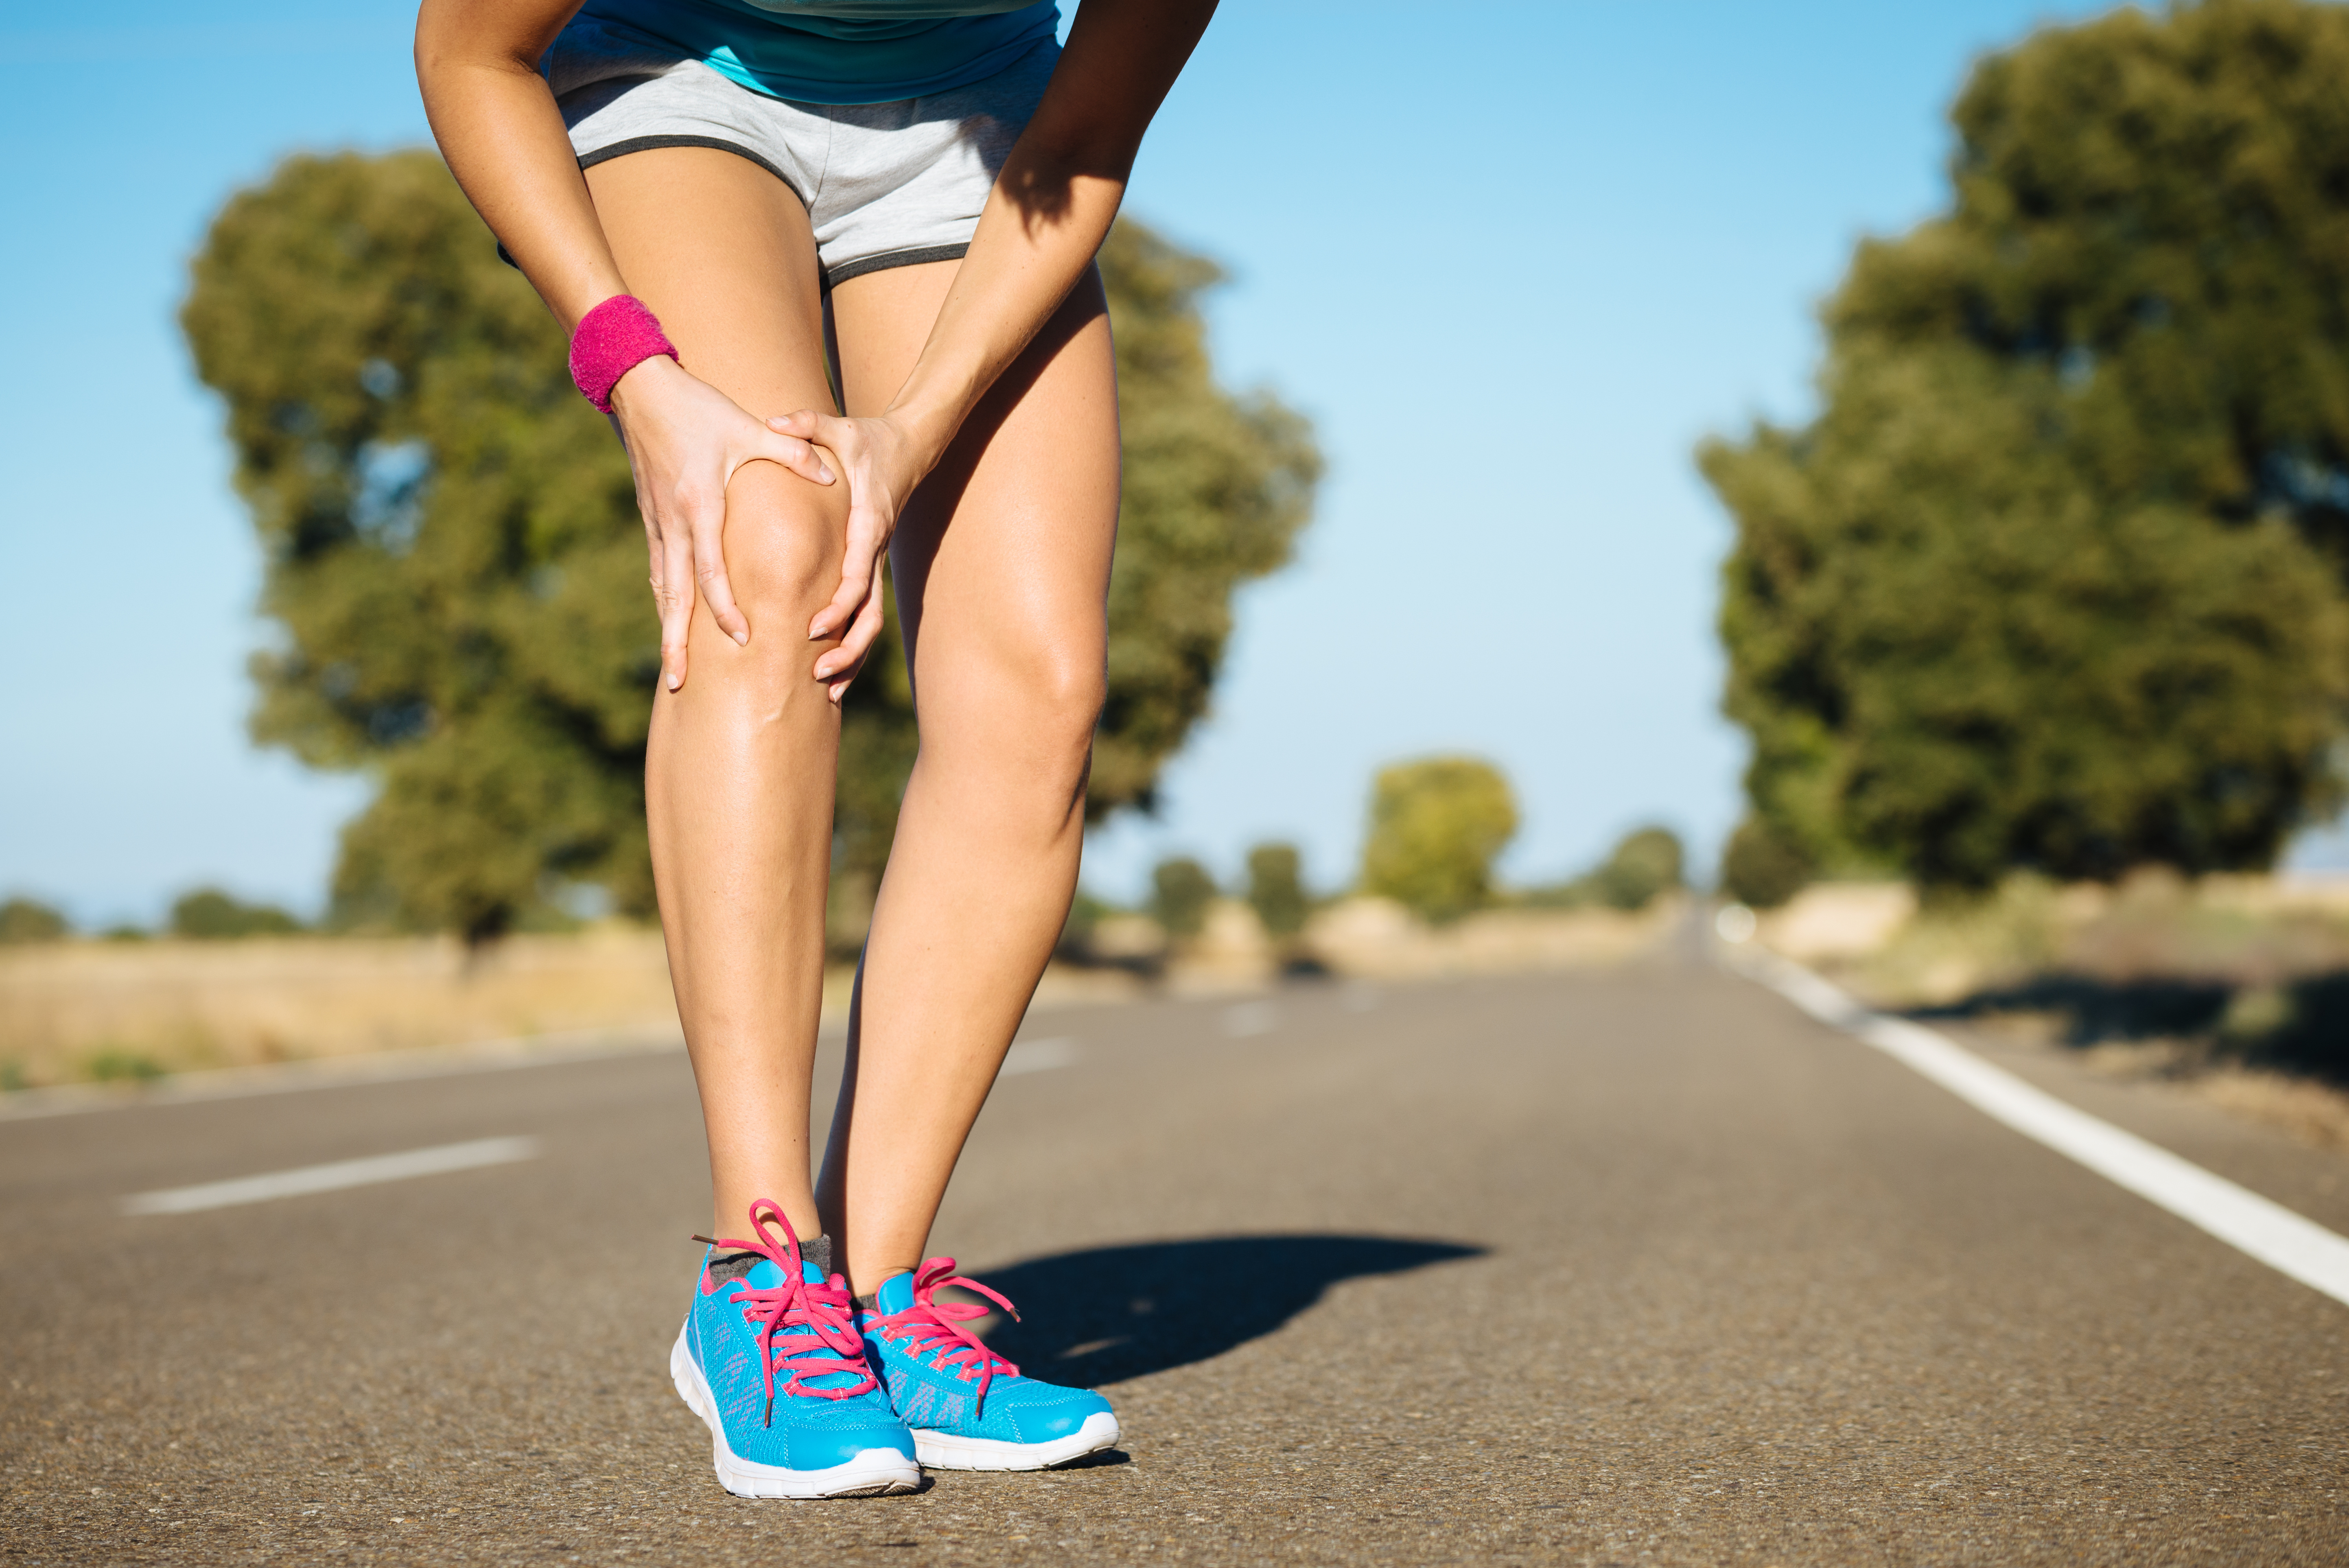 Runner training  knee pain